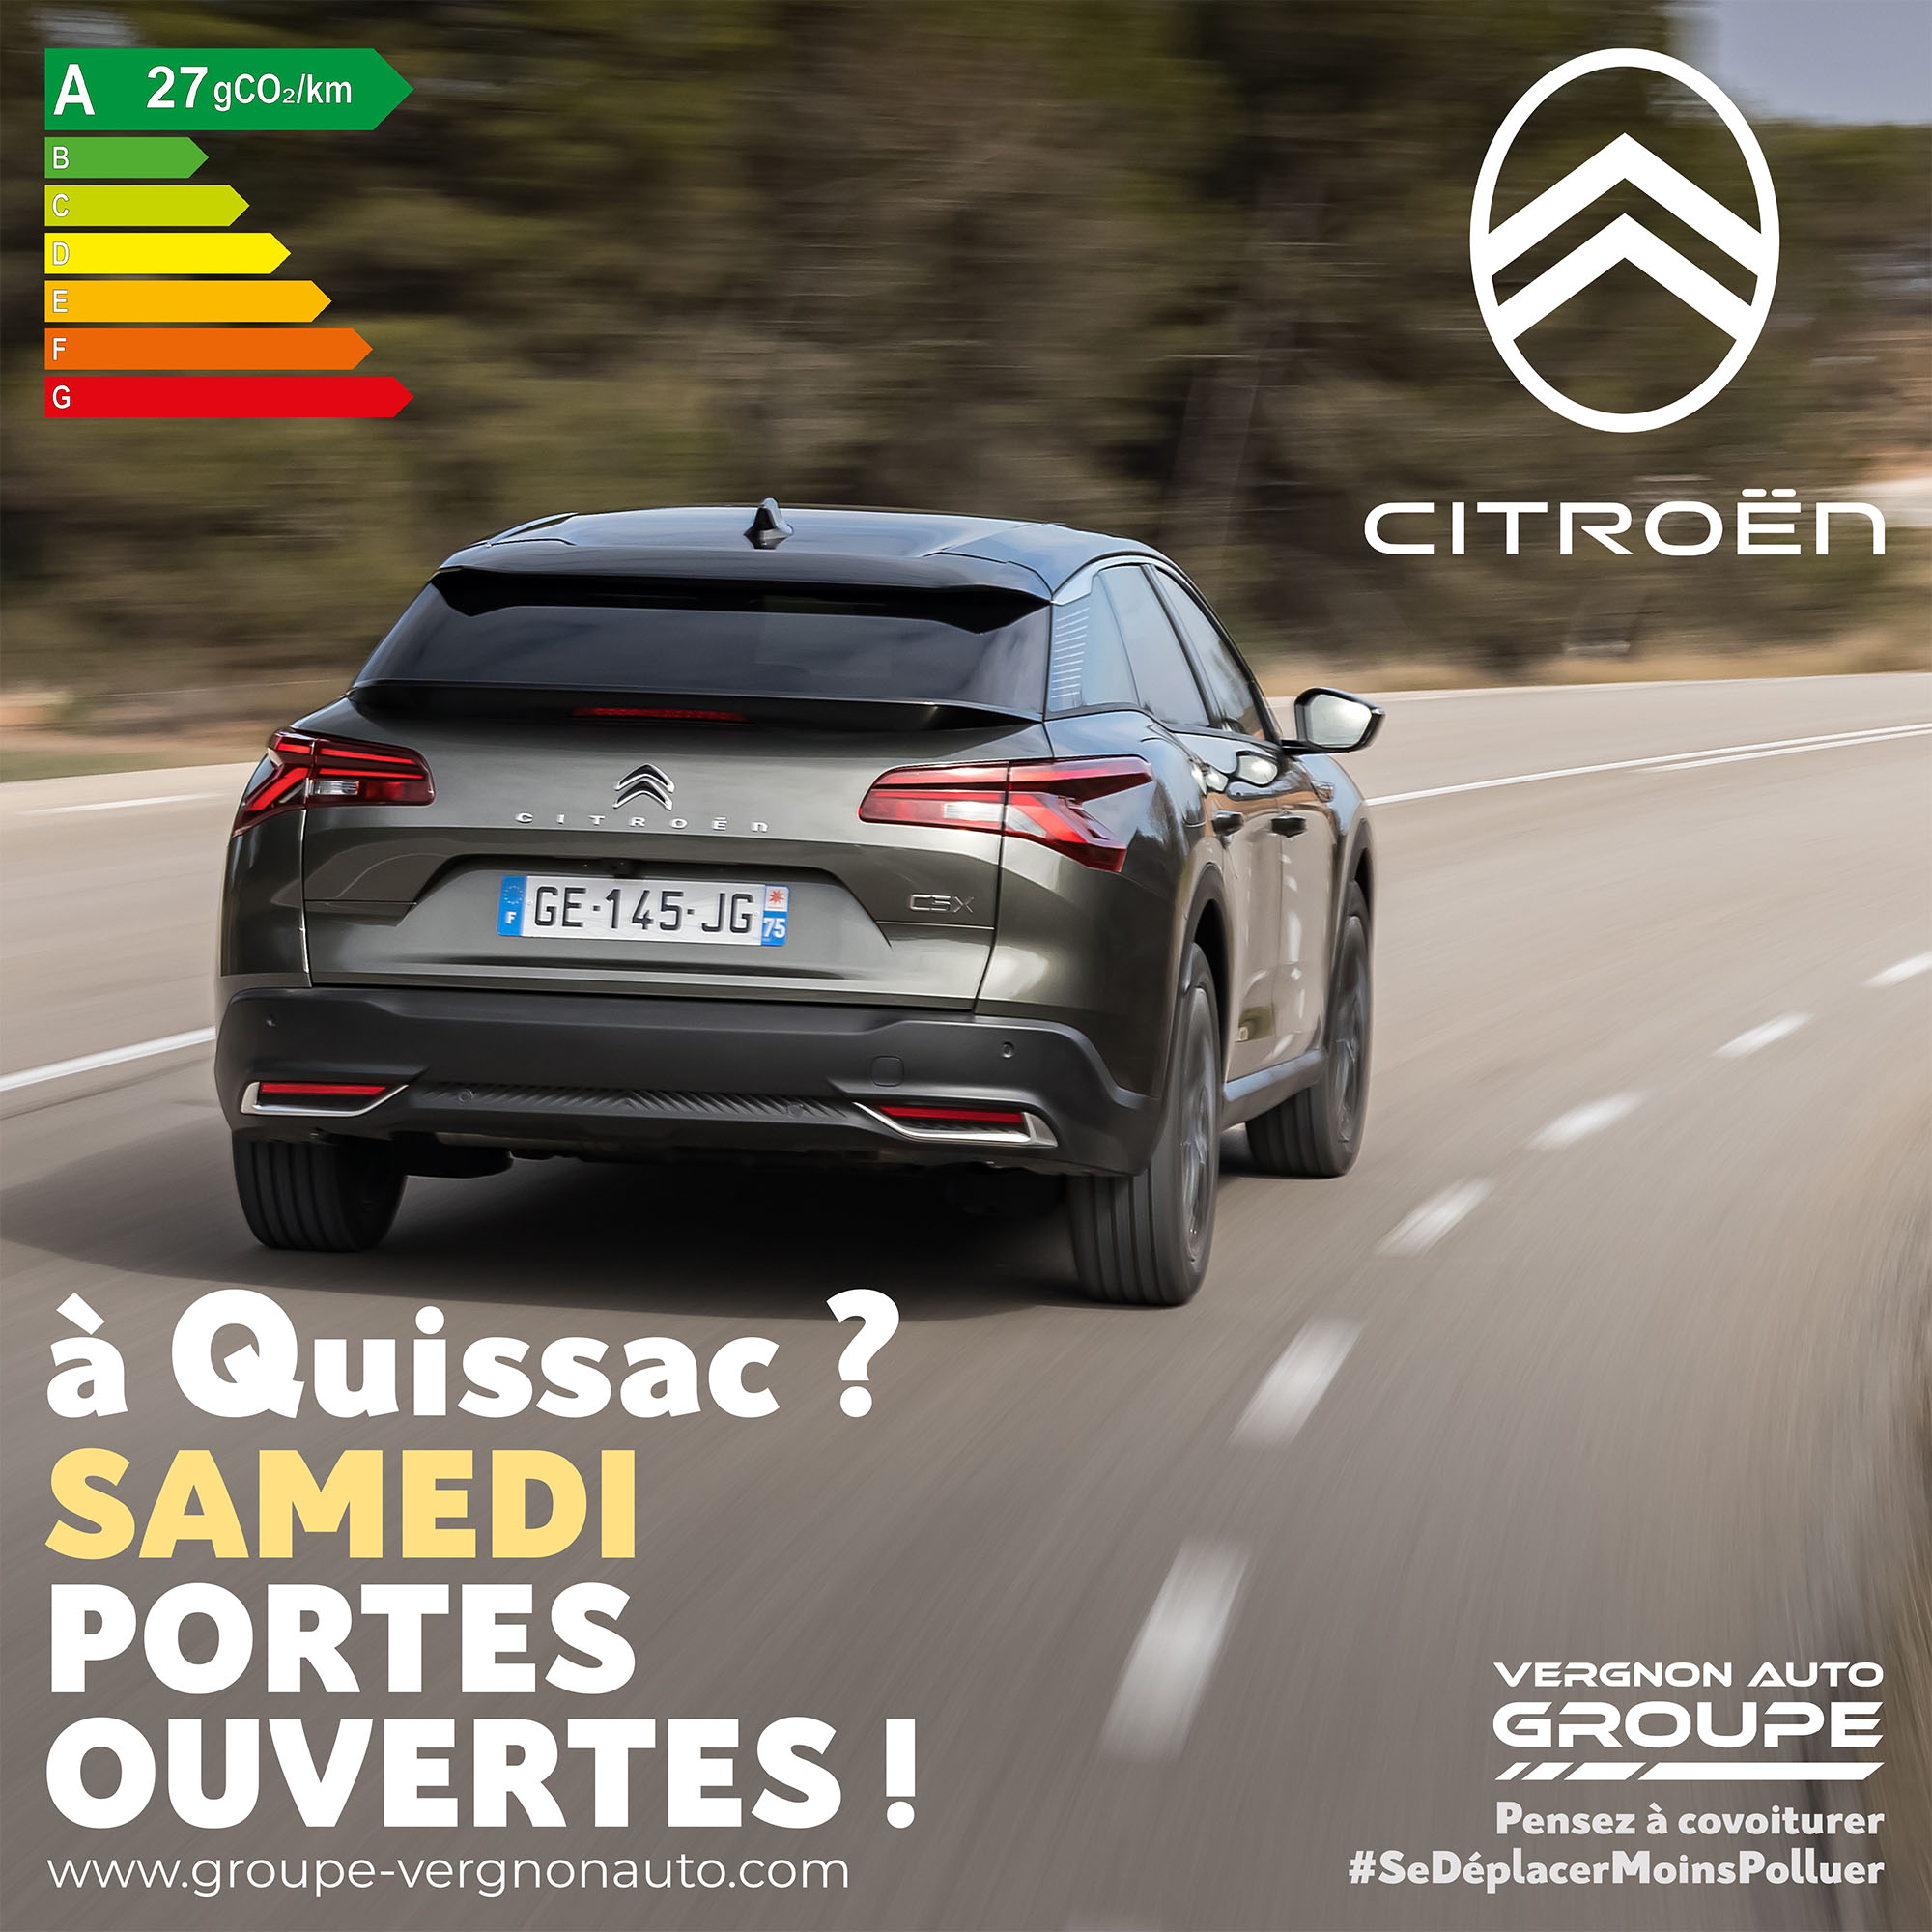 Samedi 14 janvier 2023, portes ouvertes Citroën à Quissac, venez profiter de nos offres en neuf comme en occasion !